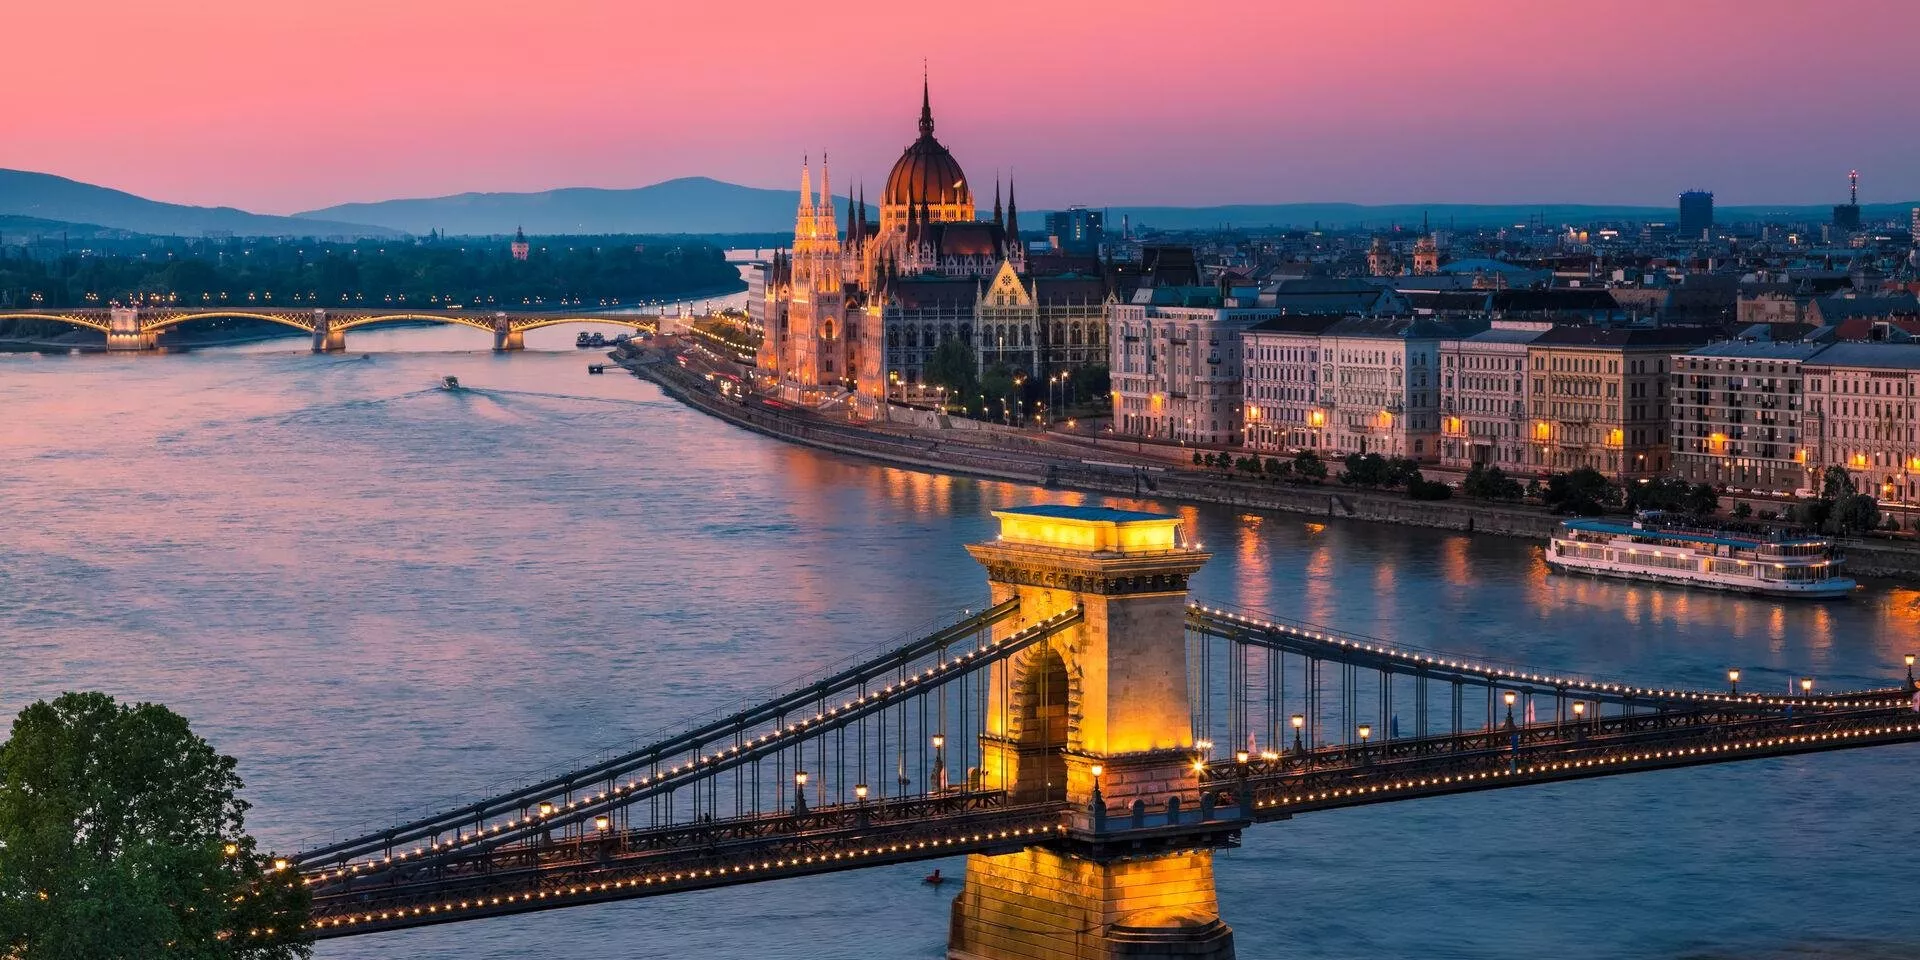 السياحة في المجر  المجر   أماكن سياحية   سياحة   وجهات   سفر   رحلات طيران